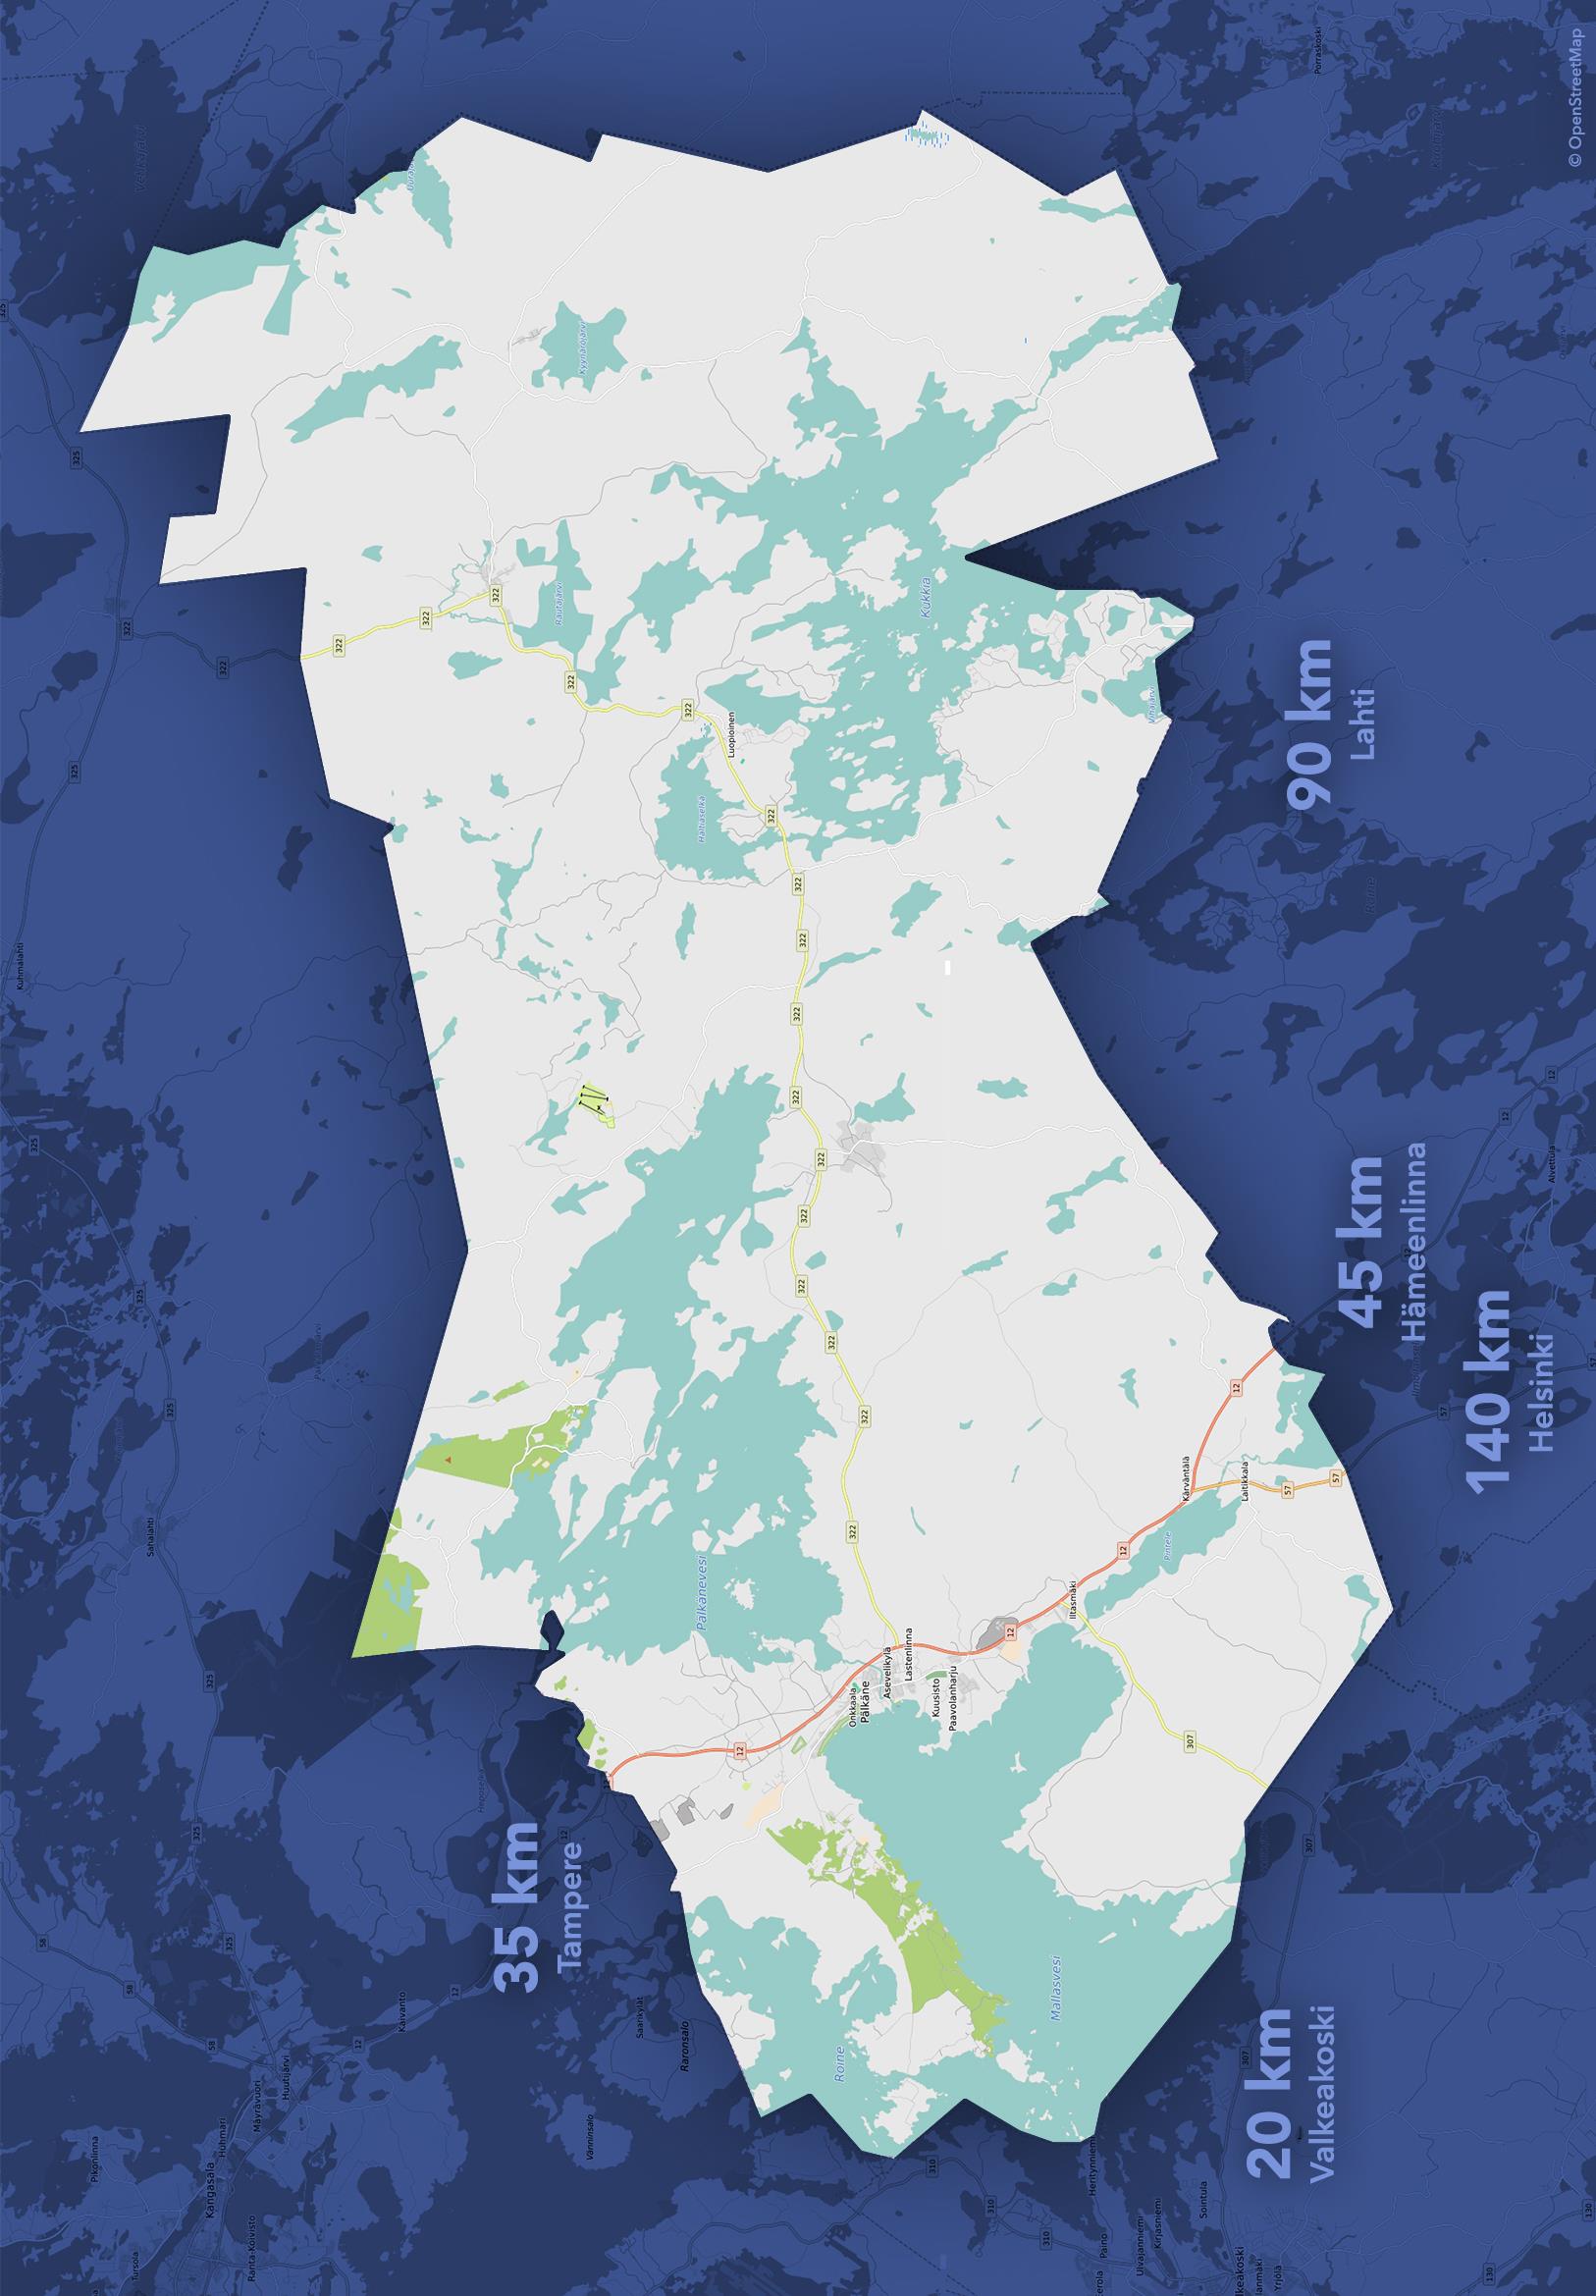 Pälkäne Asukasluku 6678 (2016) 4200 vapaa-ajan asuntoa Pinta-ala 740 km², josta maapinta-ala 560 km²